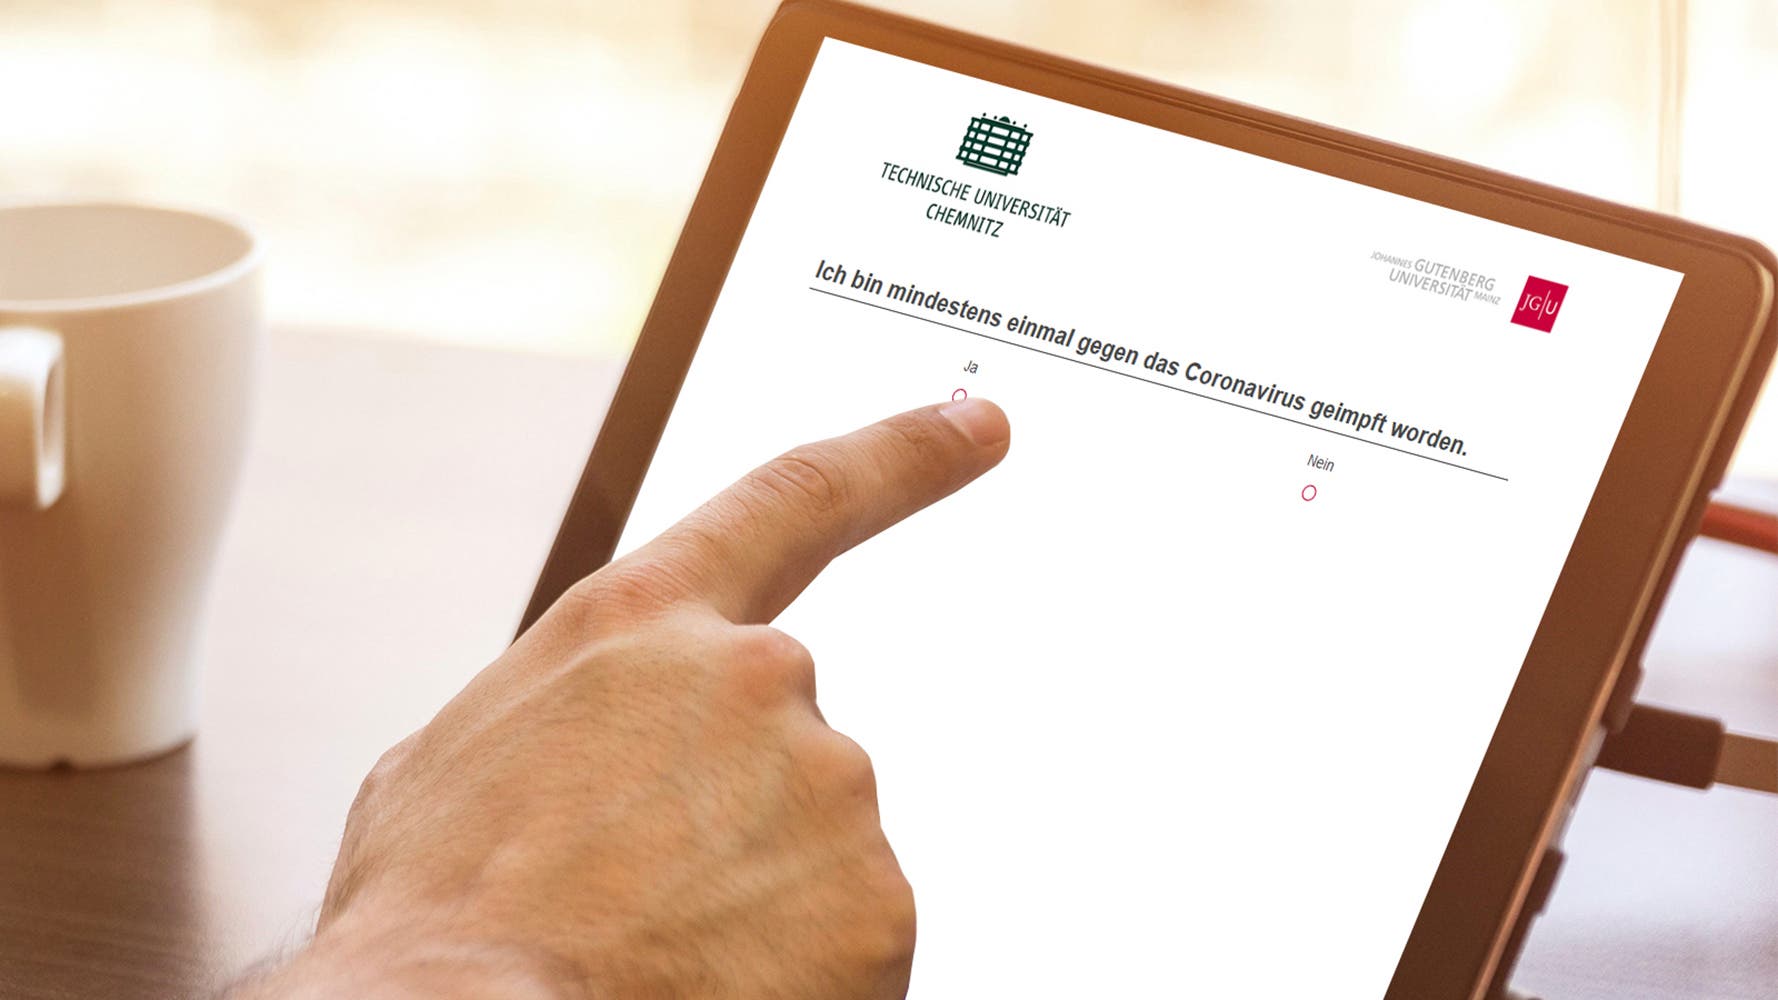 El estudio en línea de la Universidad Tecnológica de Chemnitz solicita información sobre el estado de vacunación en una pantalla